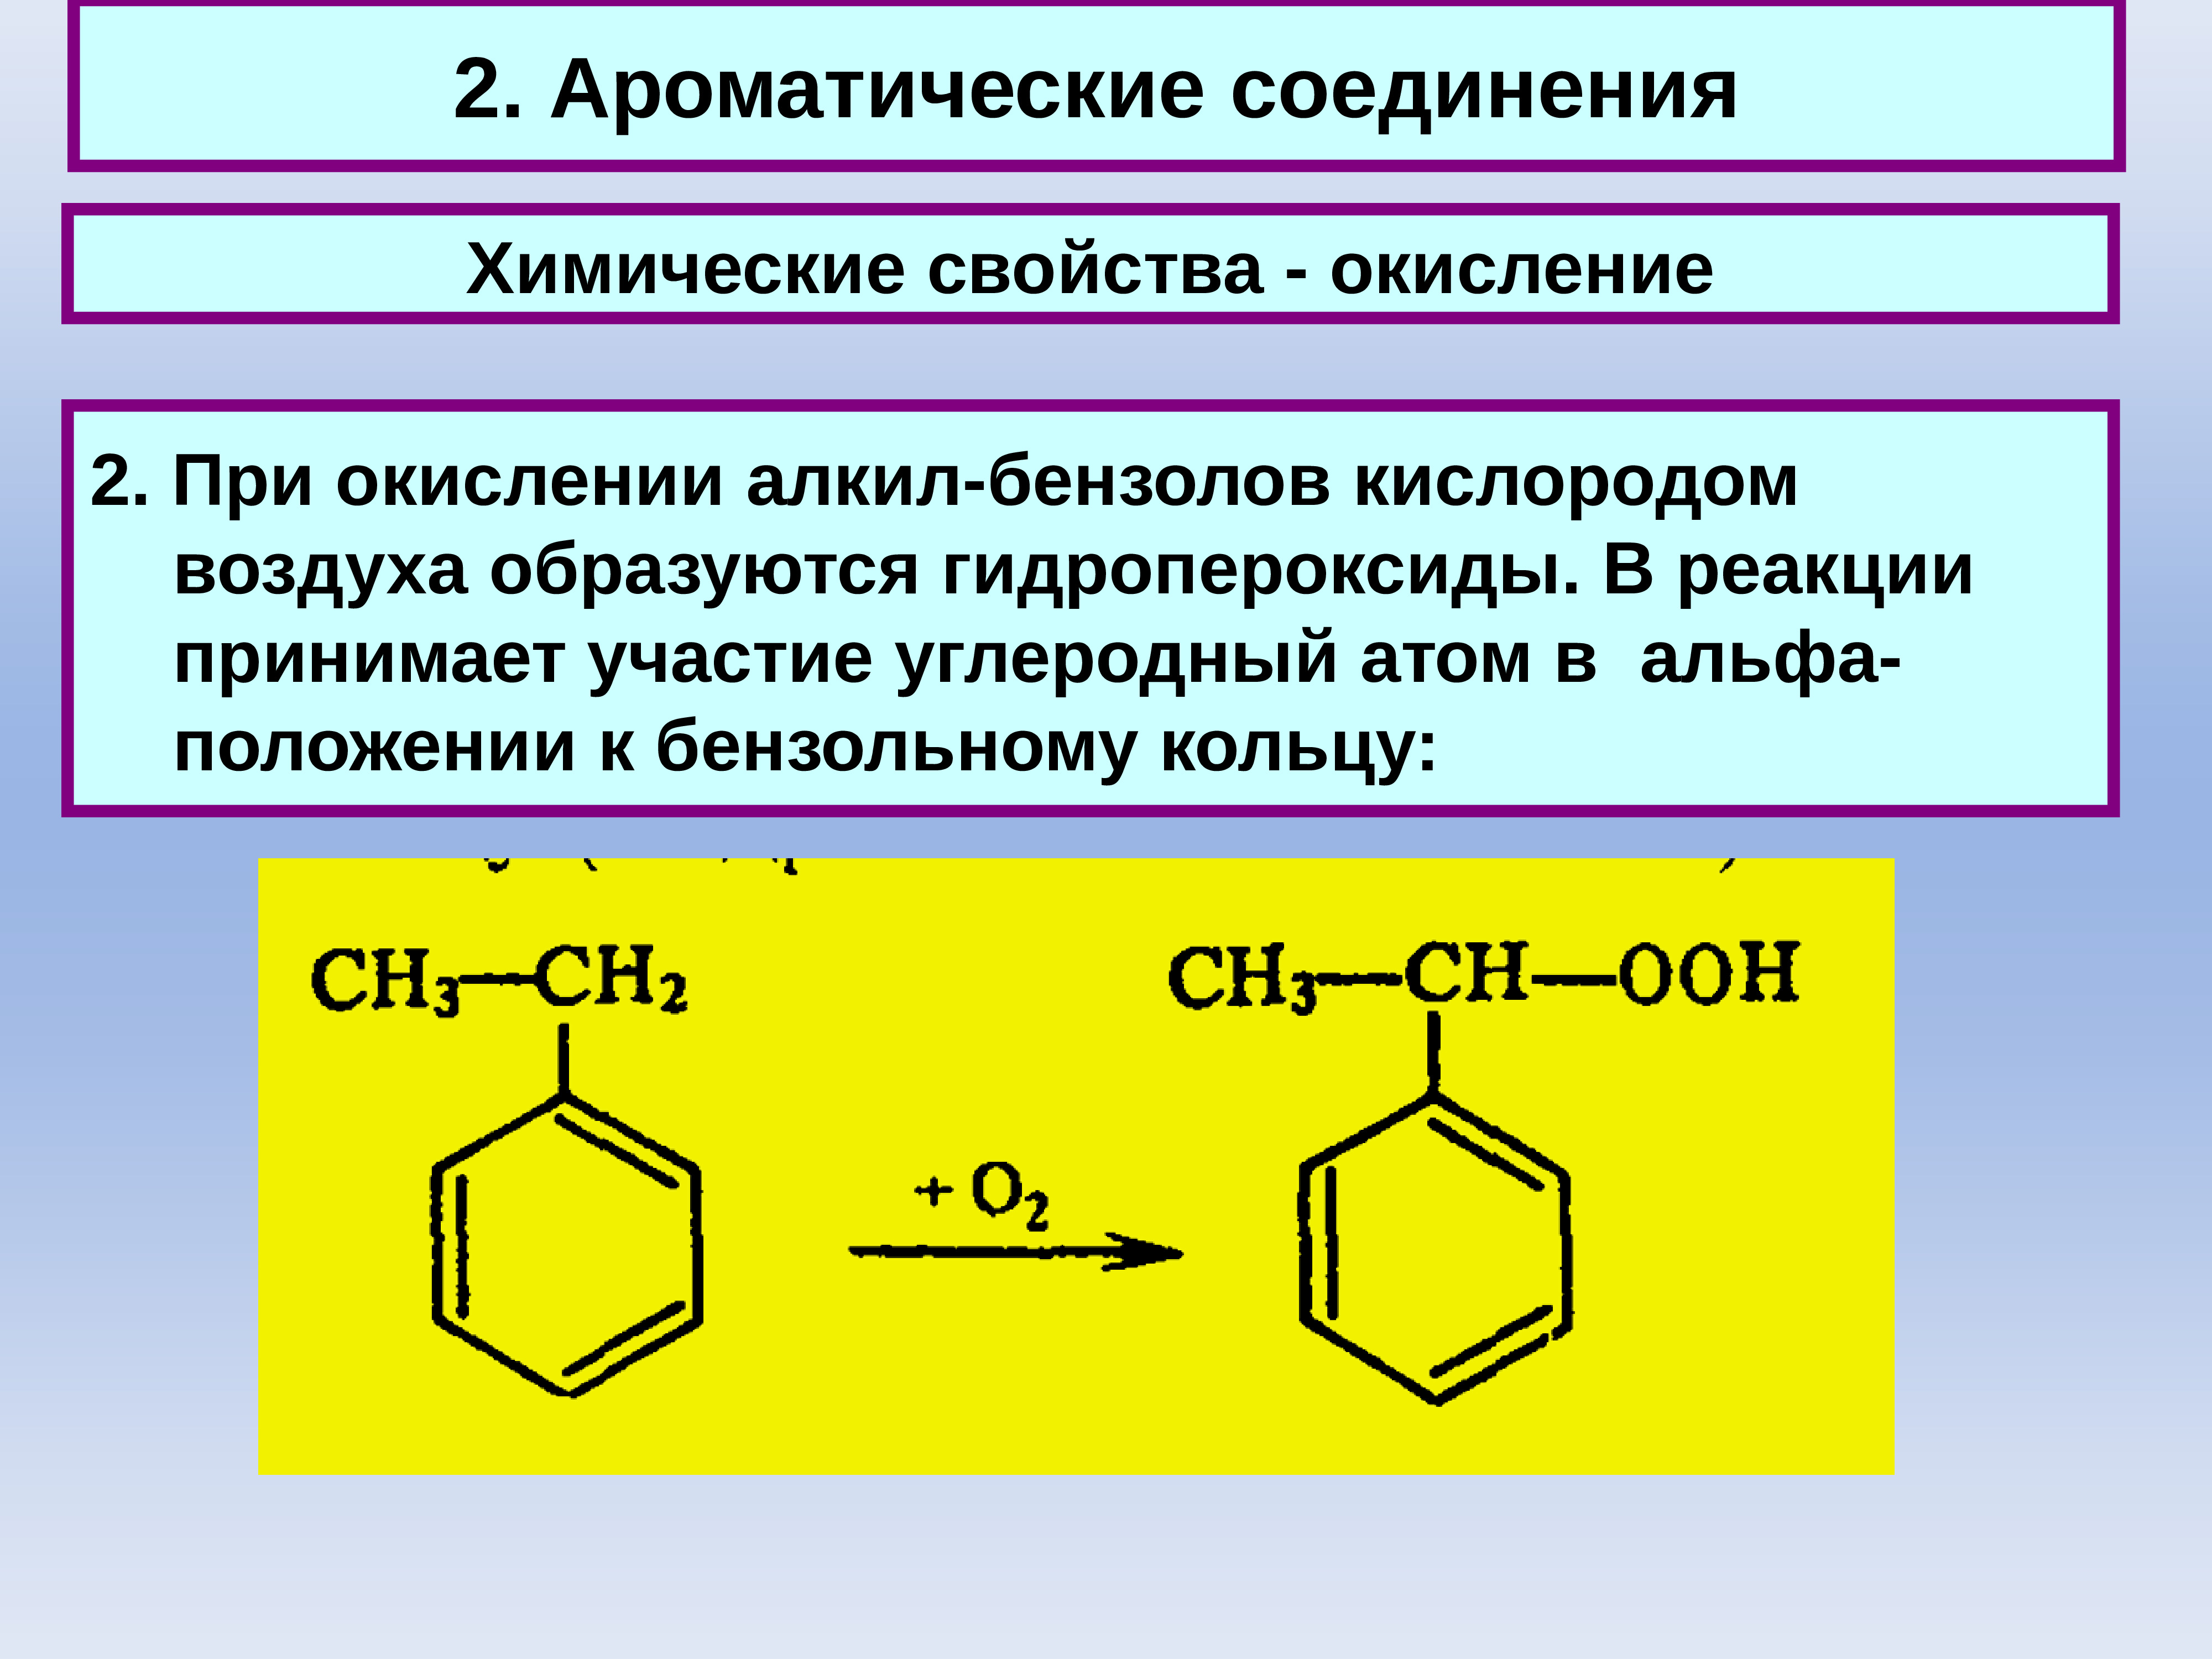 Ароматические соединения бензола